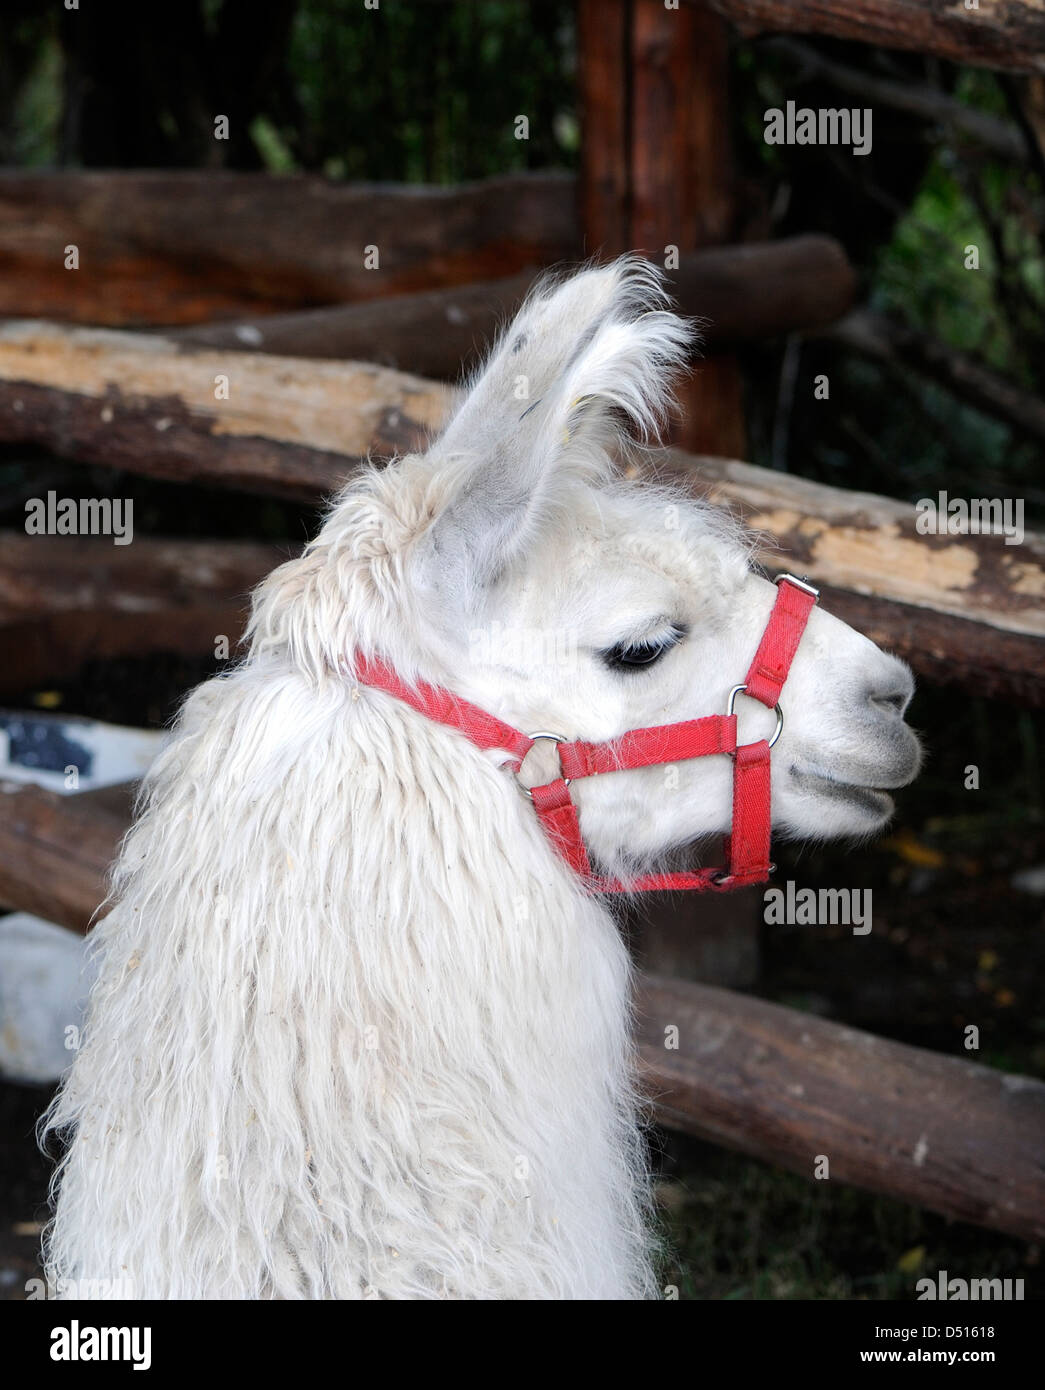 Ritratto di un Llama (Lama glama). Llamas sono addomesticati camelidi e a El Chalten sono utilizzati per il trasporto di apparecchiature. Foto Stock